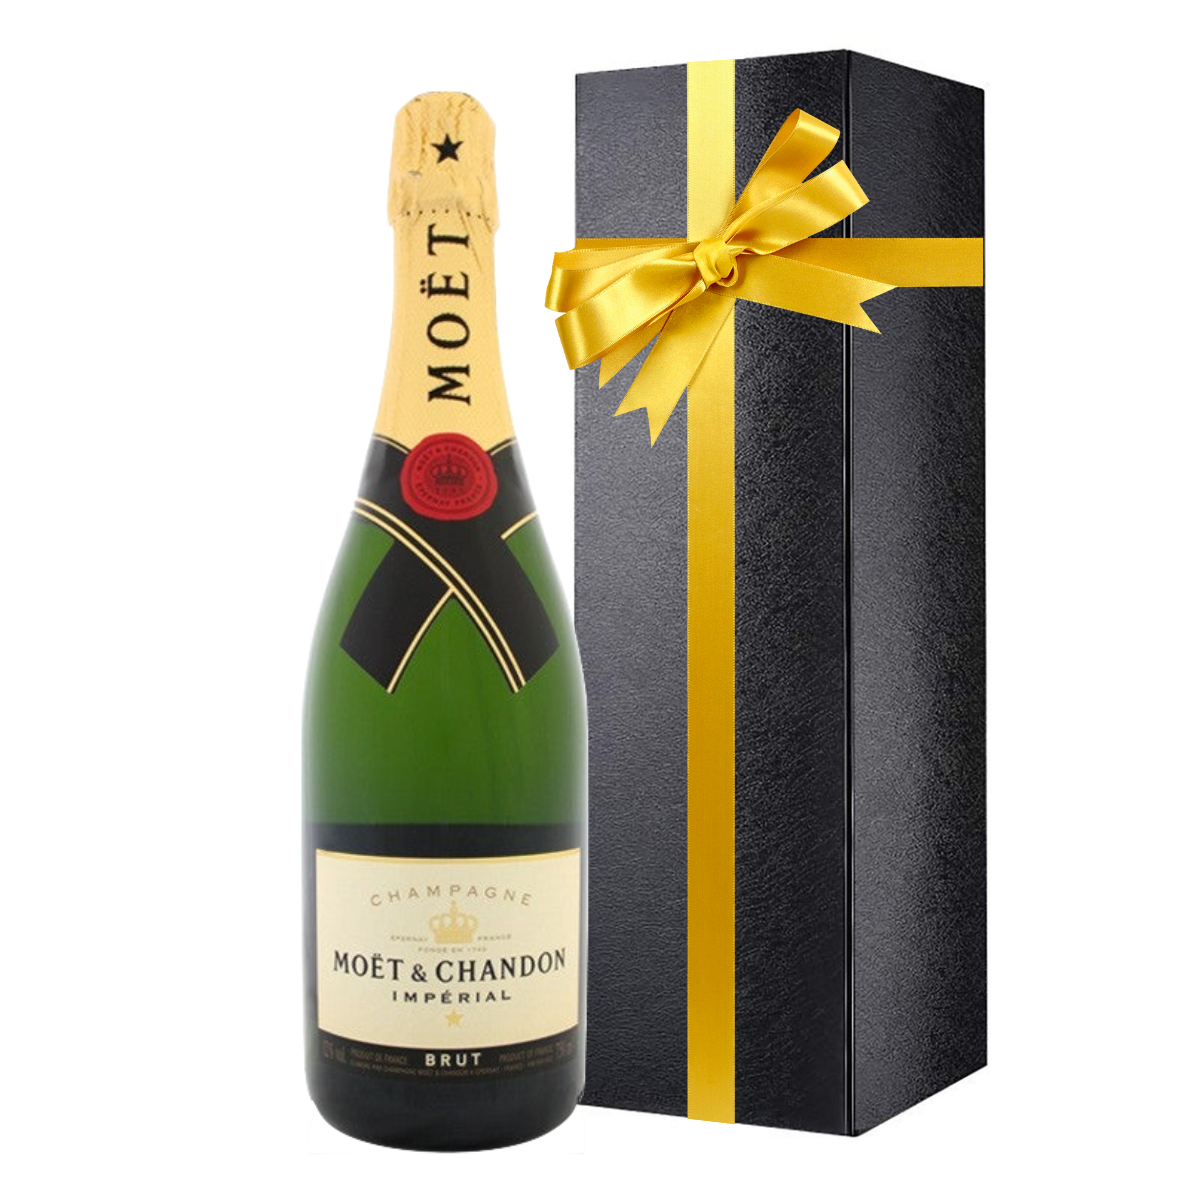 Buy Moet et Chandon Champagne Bottles & Gifts